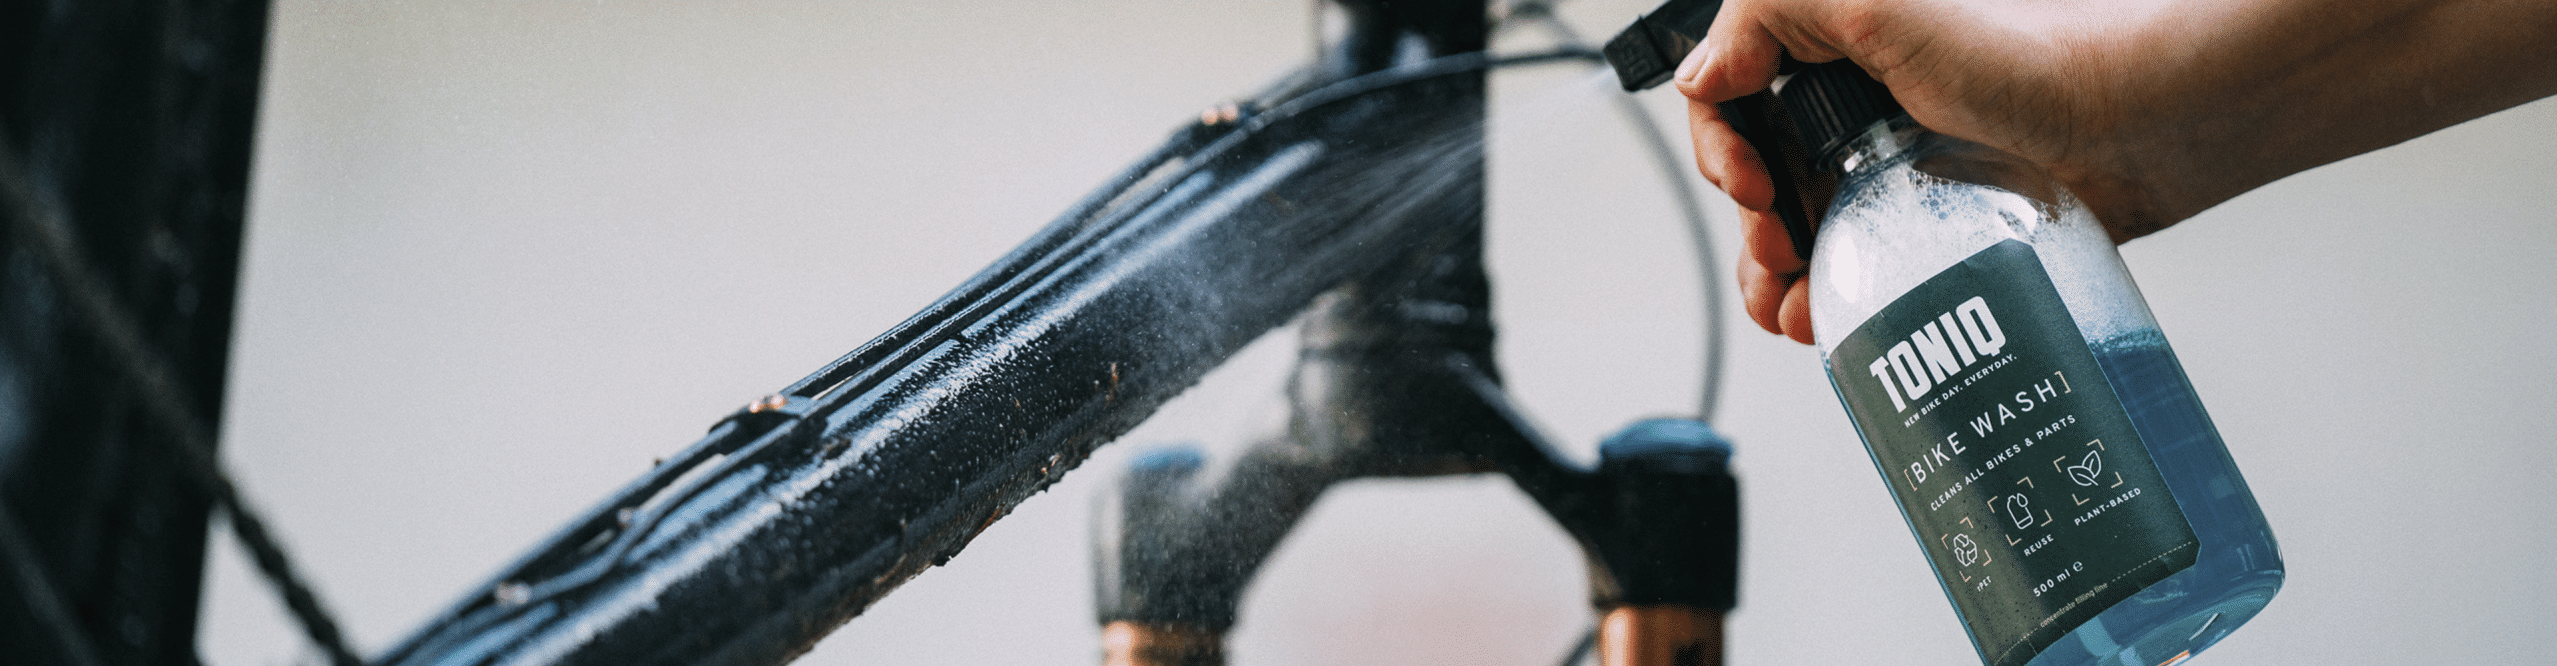 TONIQ Bike Wash wird auf Rahmen gesprüht